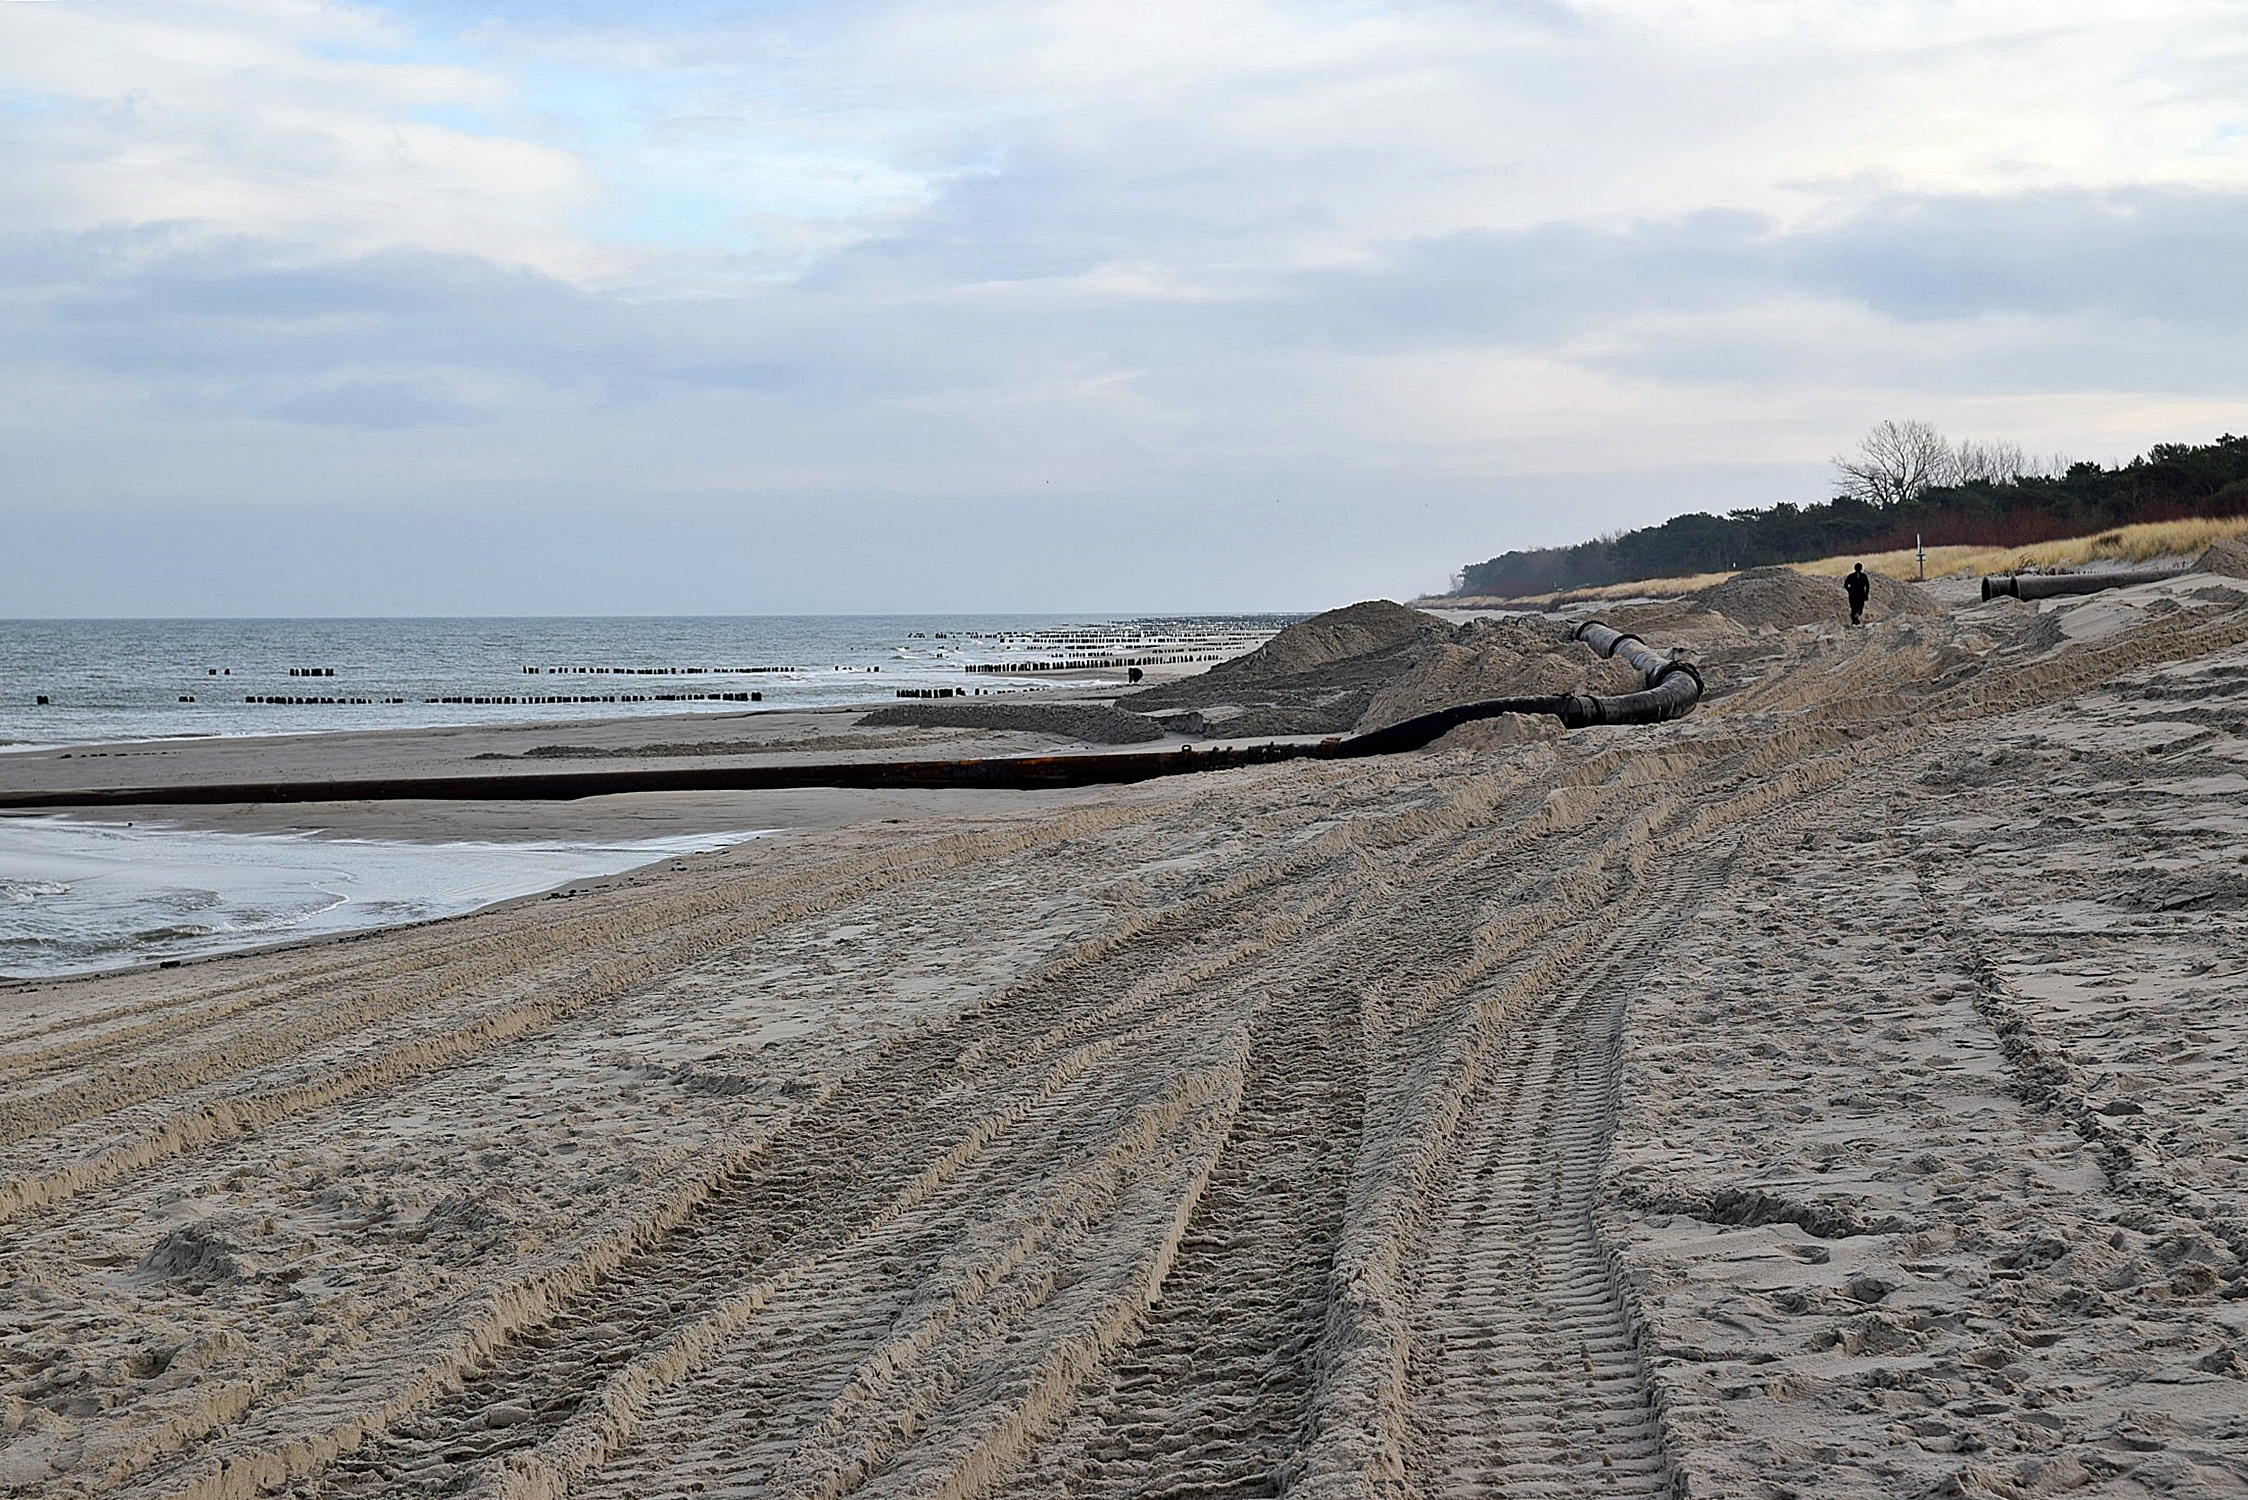 Zdjęcie z plaży, na której trwa refulacja. Widoczne hałdy piachu, gruba rura, którą dostarczany jest piasek z dna morskiego oraz rzędy drewnianych pali, tworzących ostrogi.